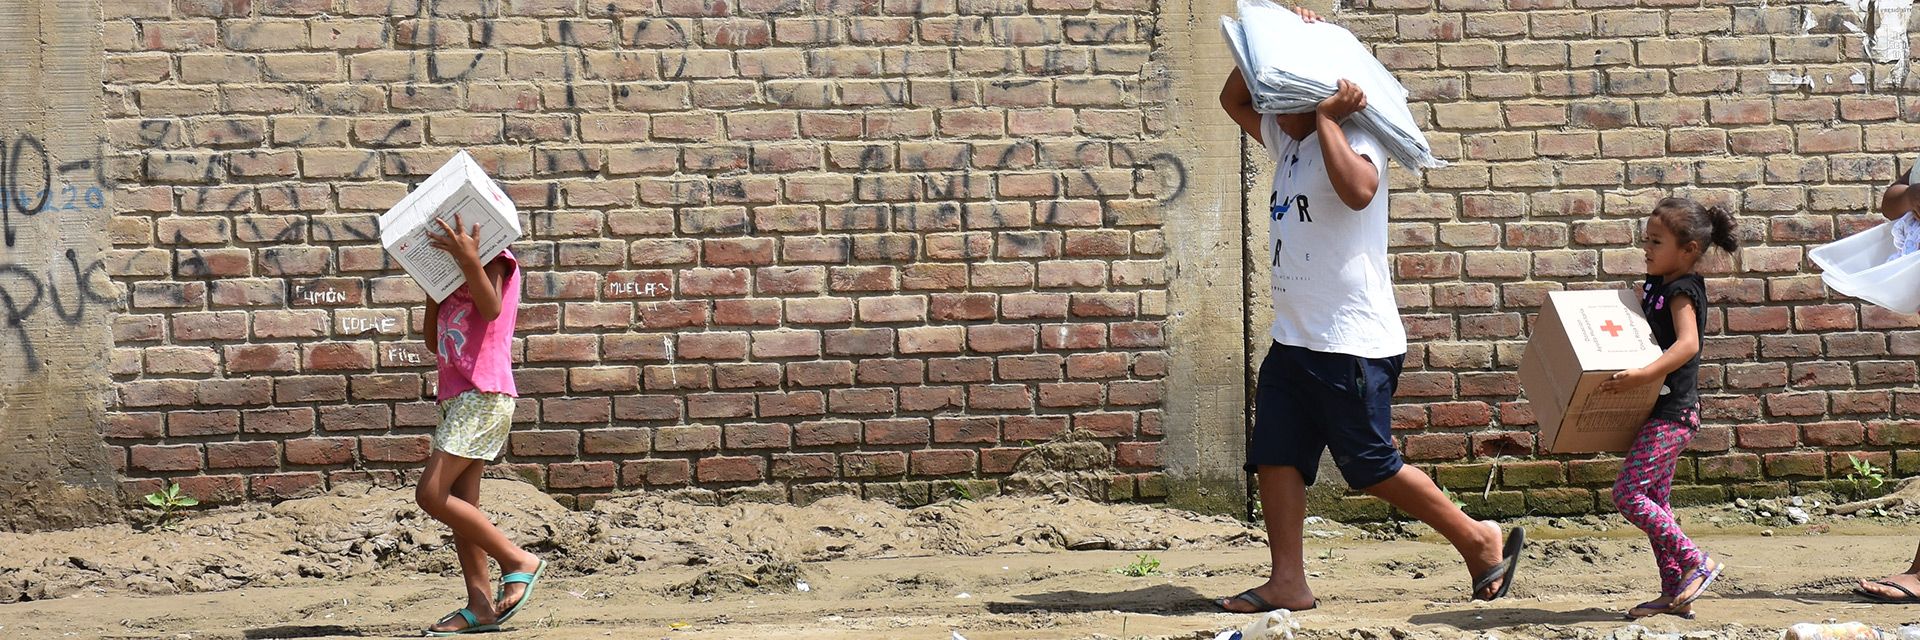 Peruanische Kinder tragen Hilfsgüter vor einer Mauer